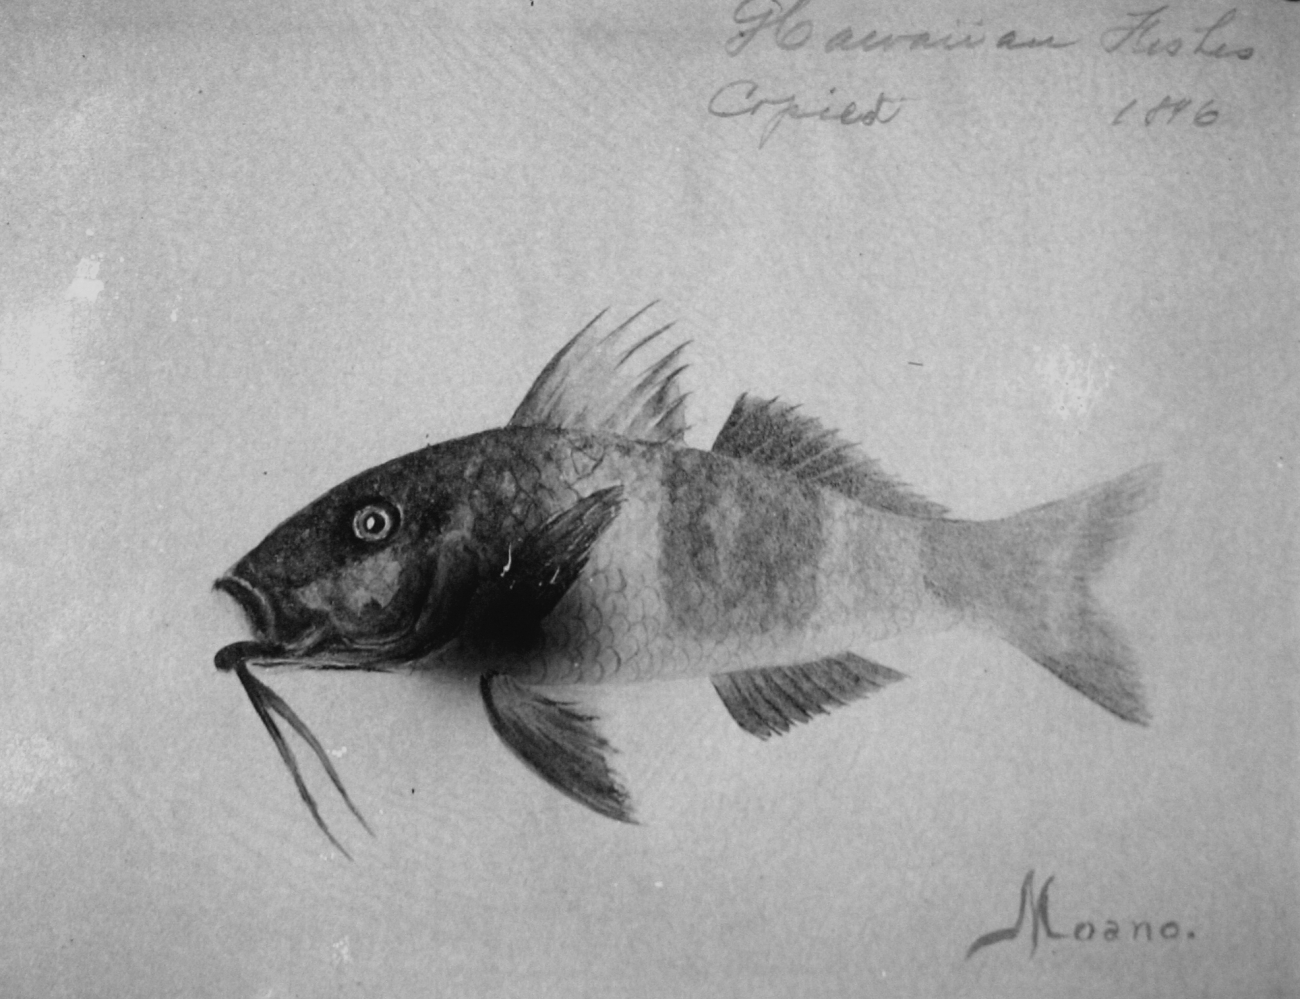 Hawaiian fishes, 1896, Moano